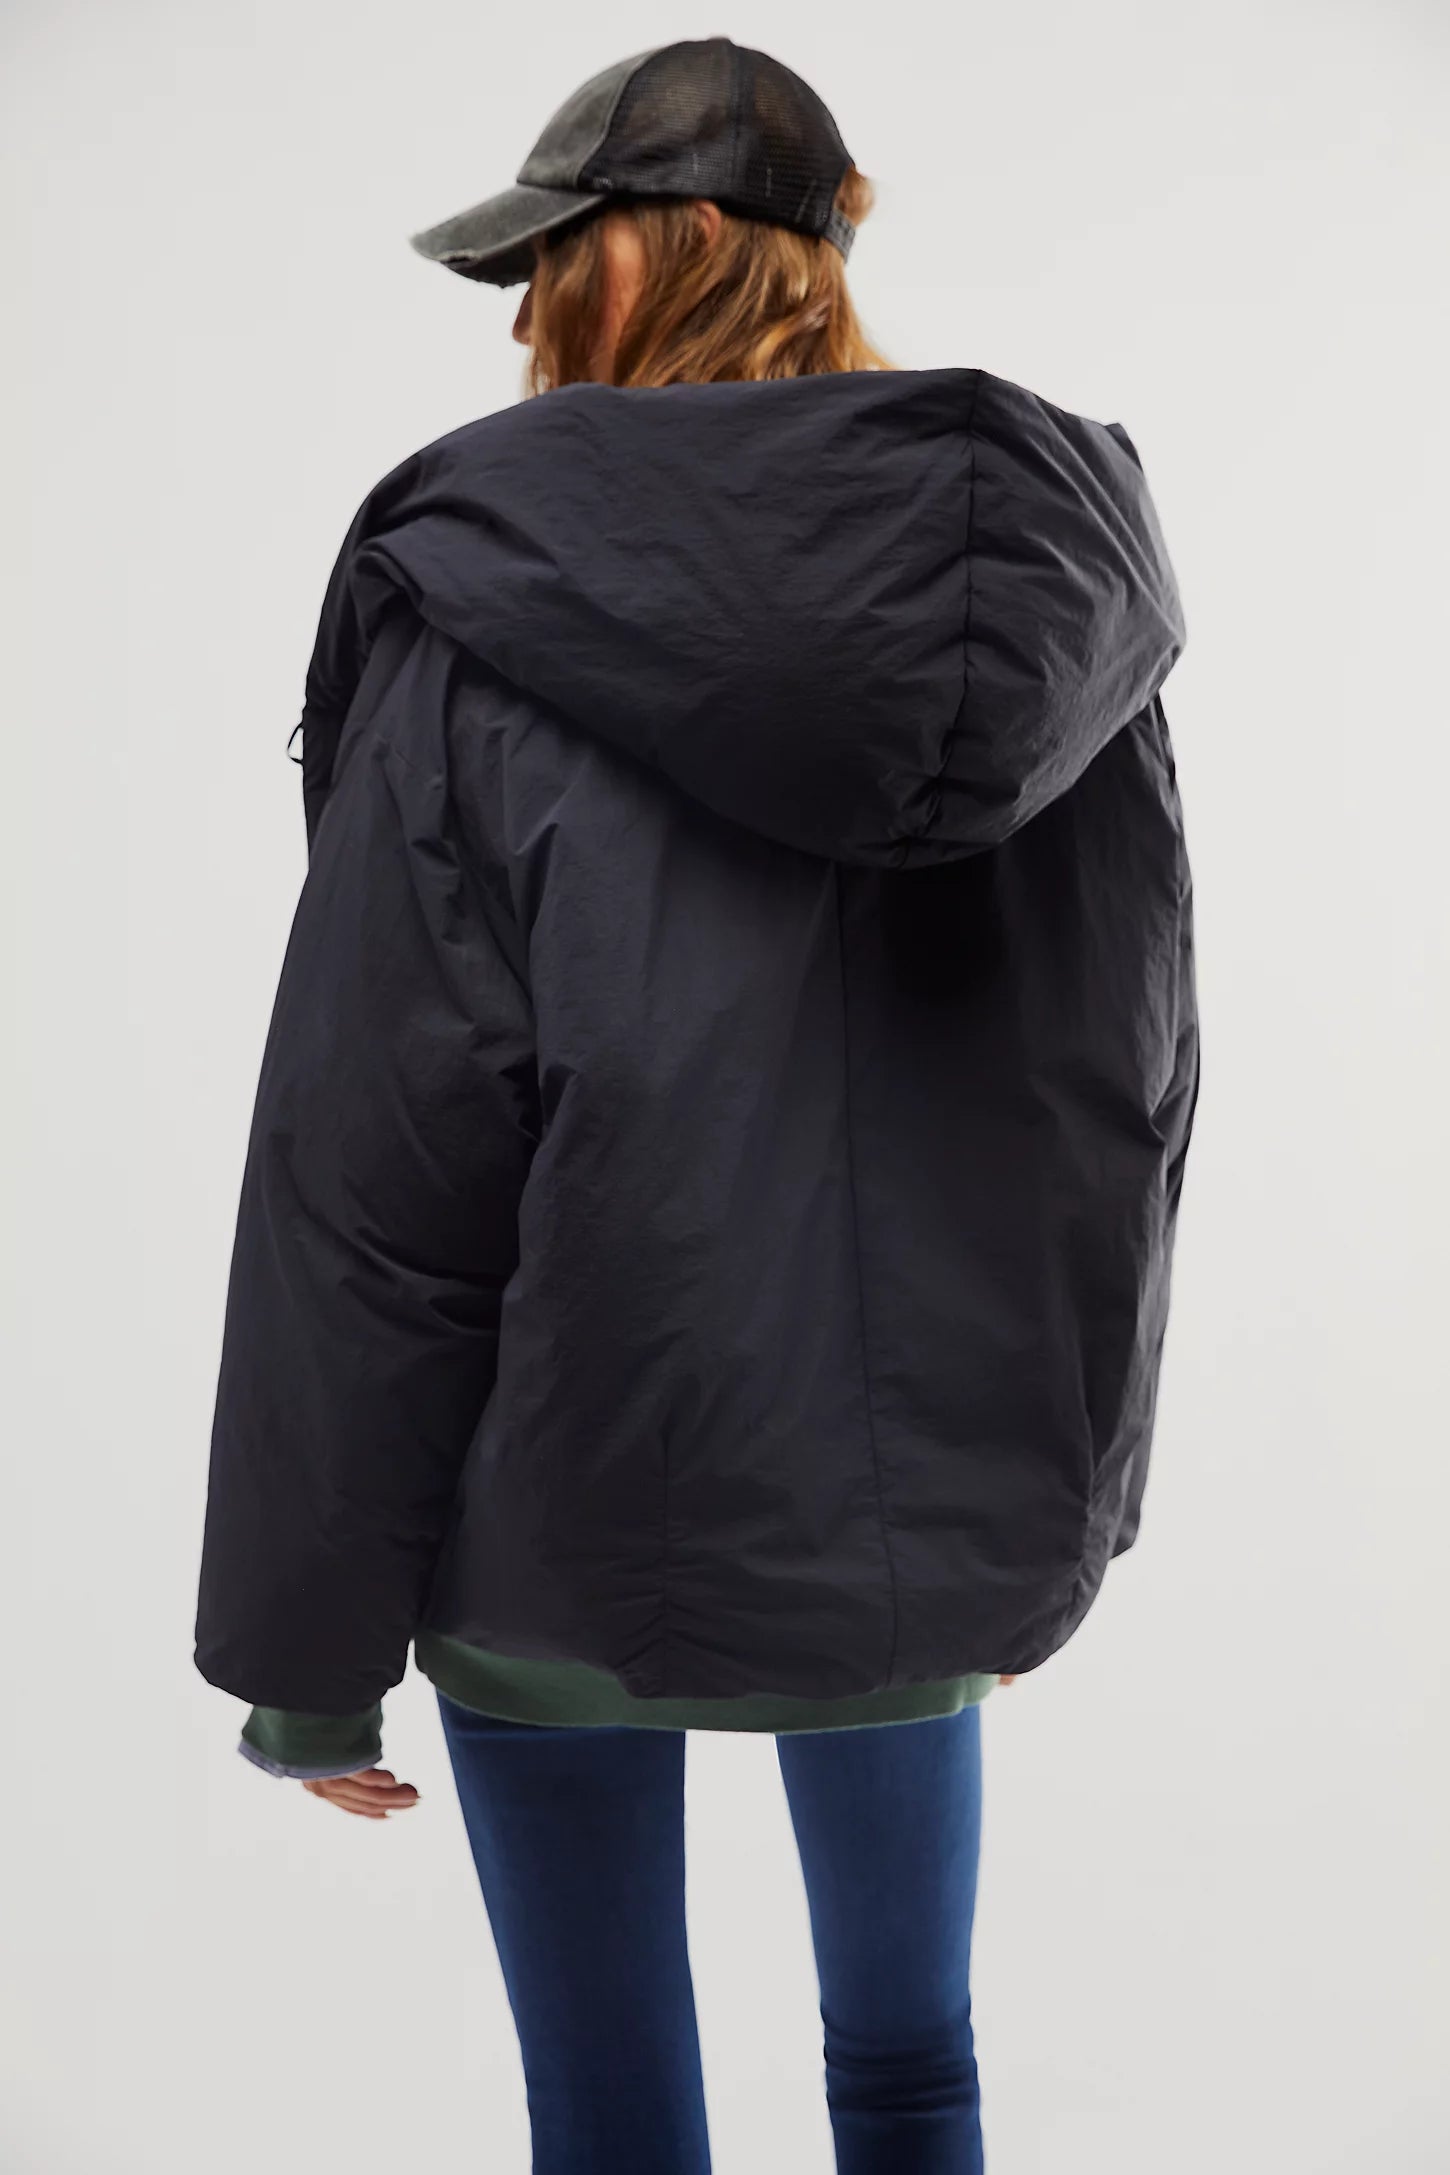 Cozy Cloud Puffer Jacket – Life's Little Pleasures Boutique